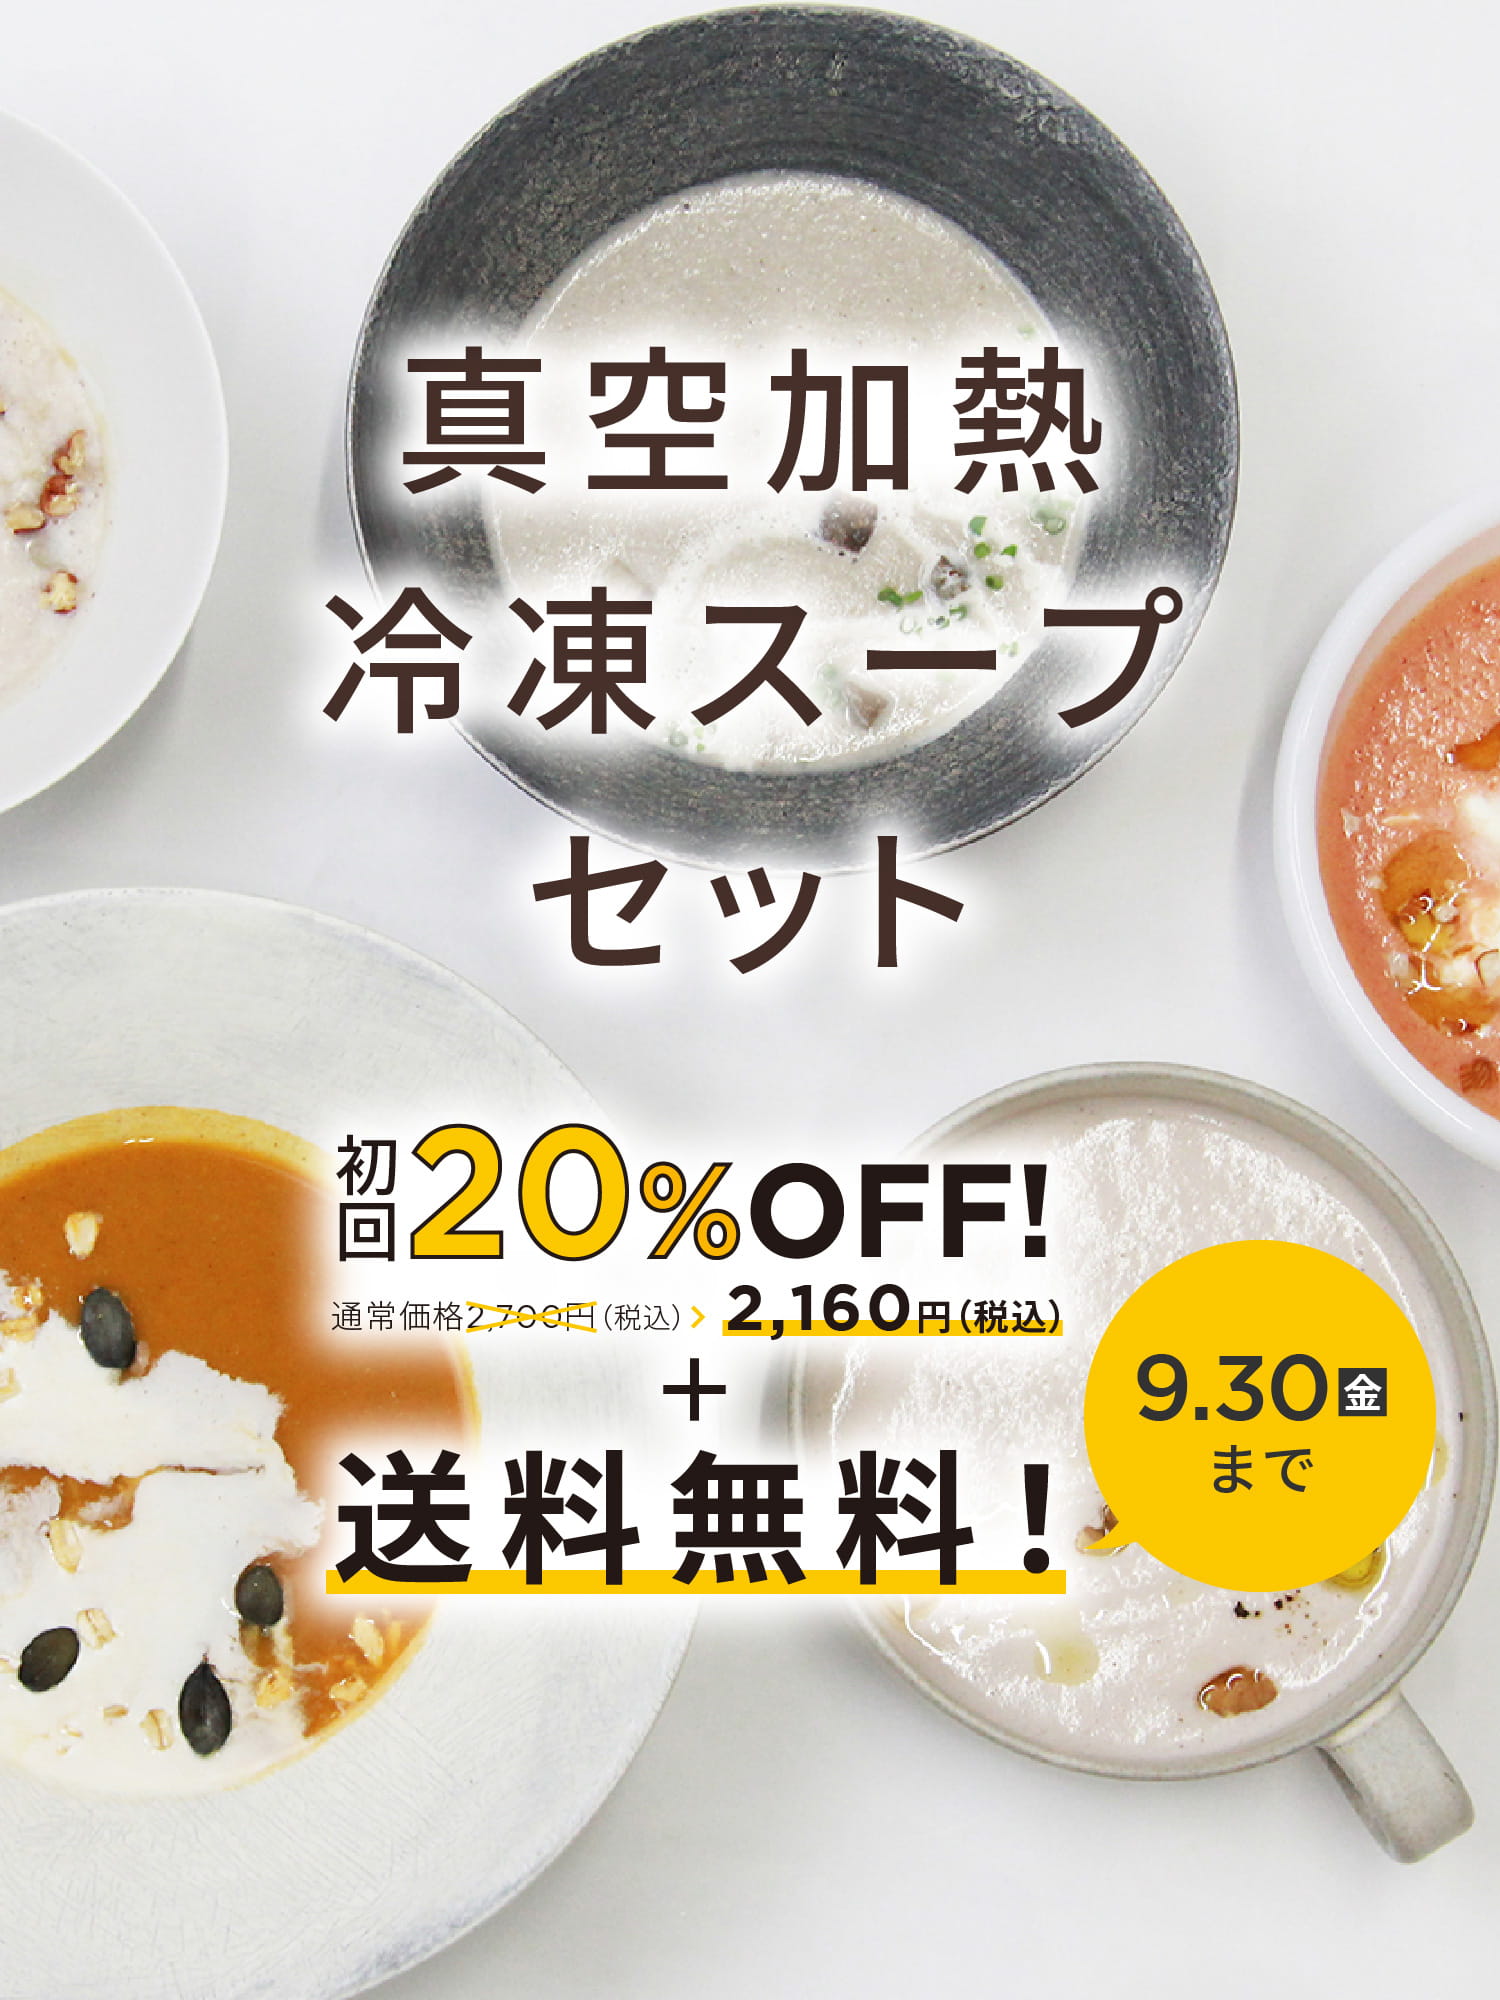 真空加熱冷凍スープセット 通常価格2,700円（税込） 初回20%OFF 2,160円（税込）＋送料無料！ 9.30(金)まで